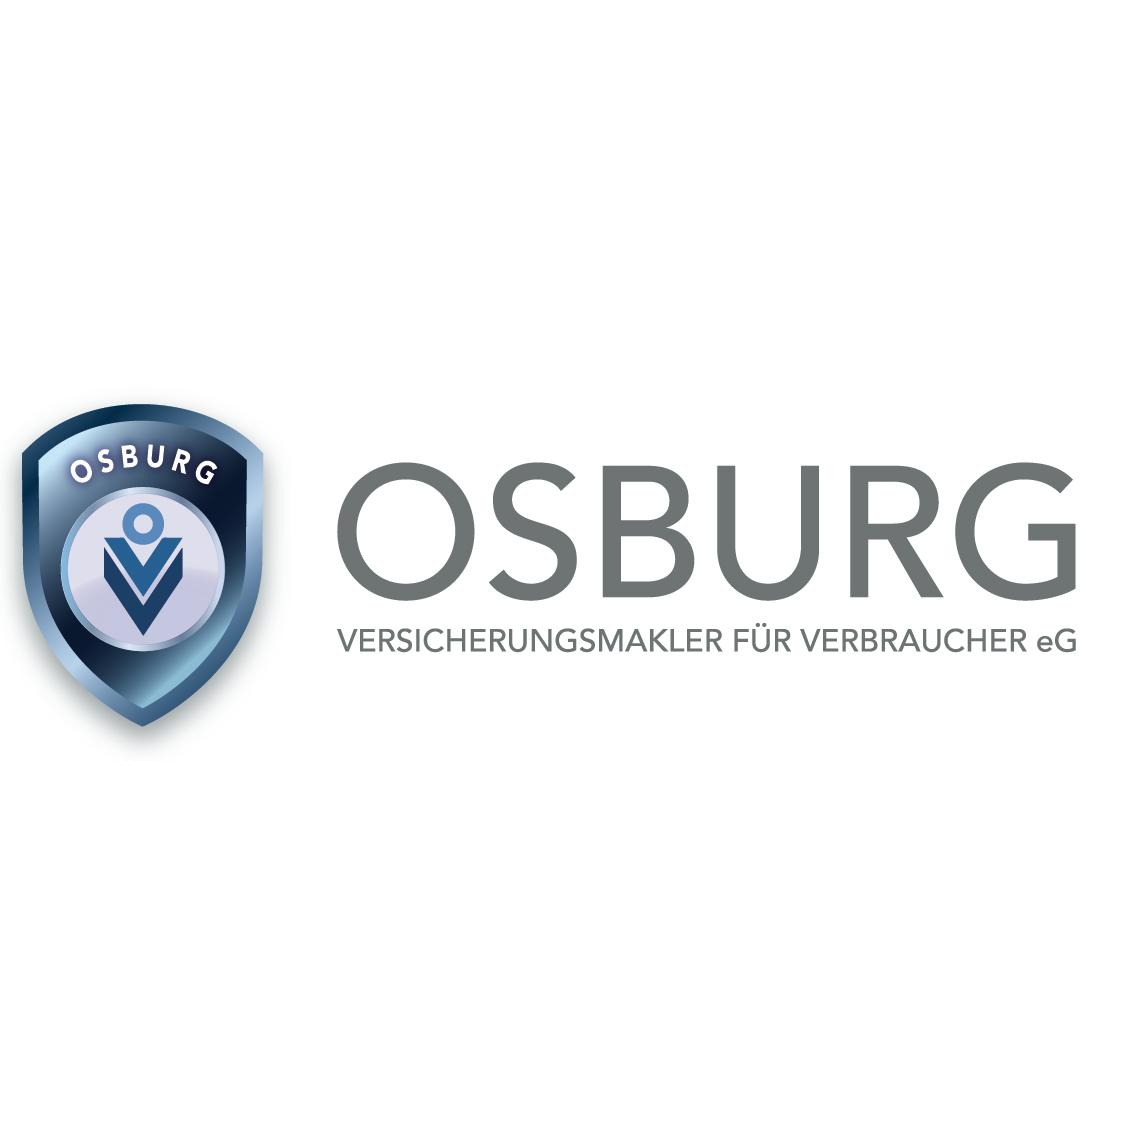 OSBURG - Versicherungsmakler für Verbraucher eG Logo